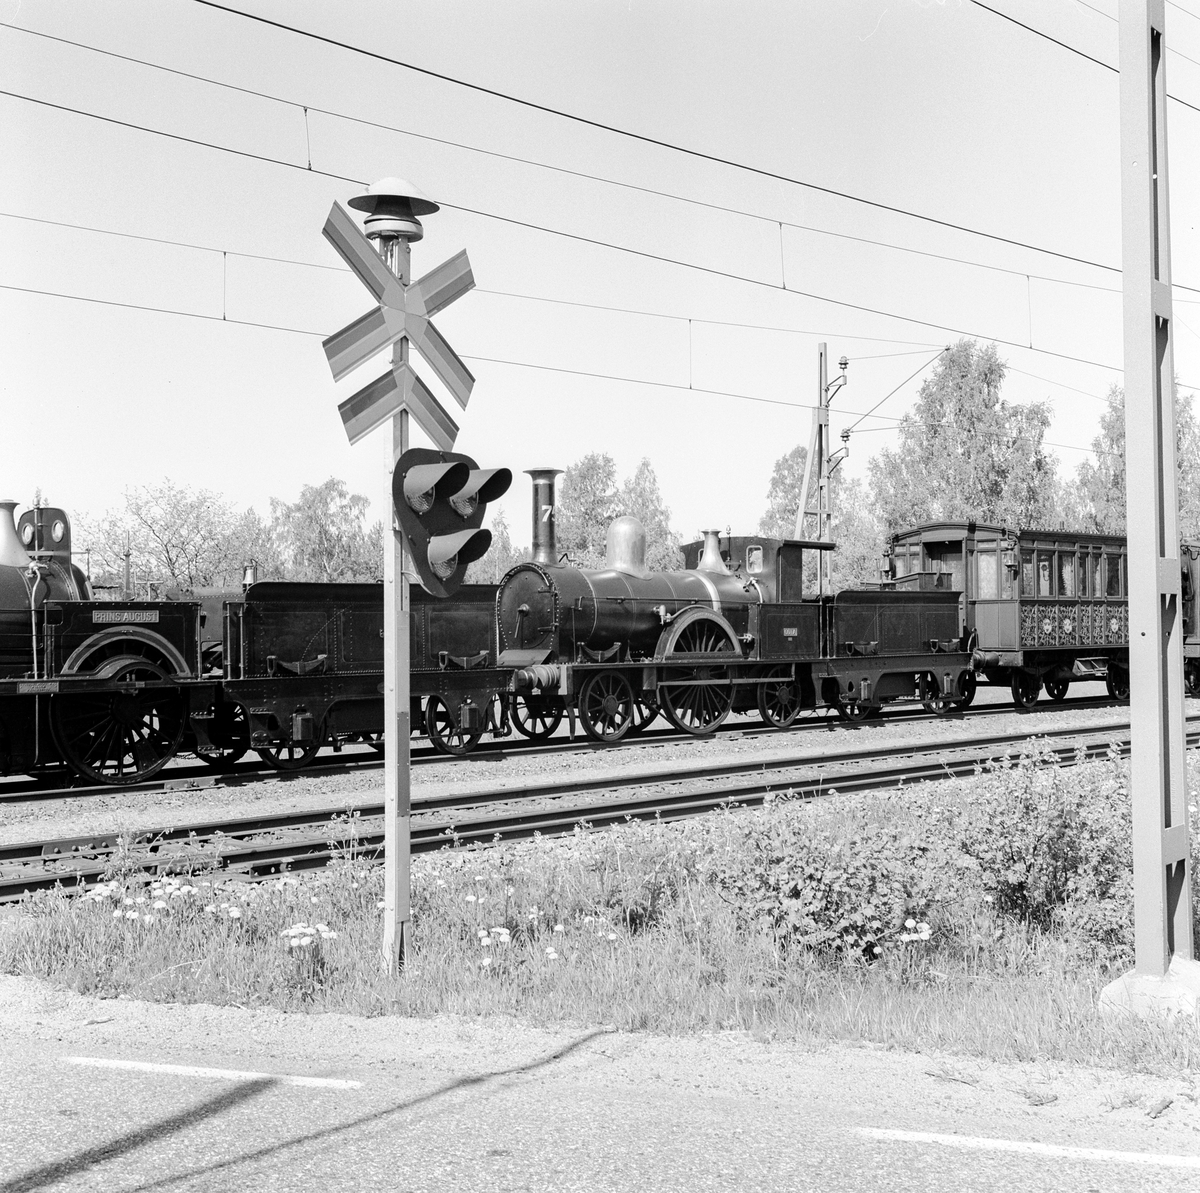 Järnvägsmuseet flyttar från Stockholm till Gävle. SJ B 43 "Prins August", SJ A 75 "Göta" och SJ 5 Kunglig audiensvagn mellan Uppsala och Gävle